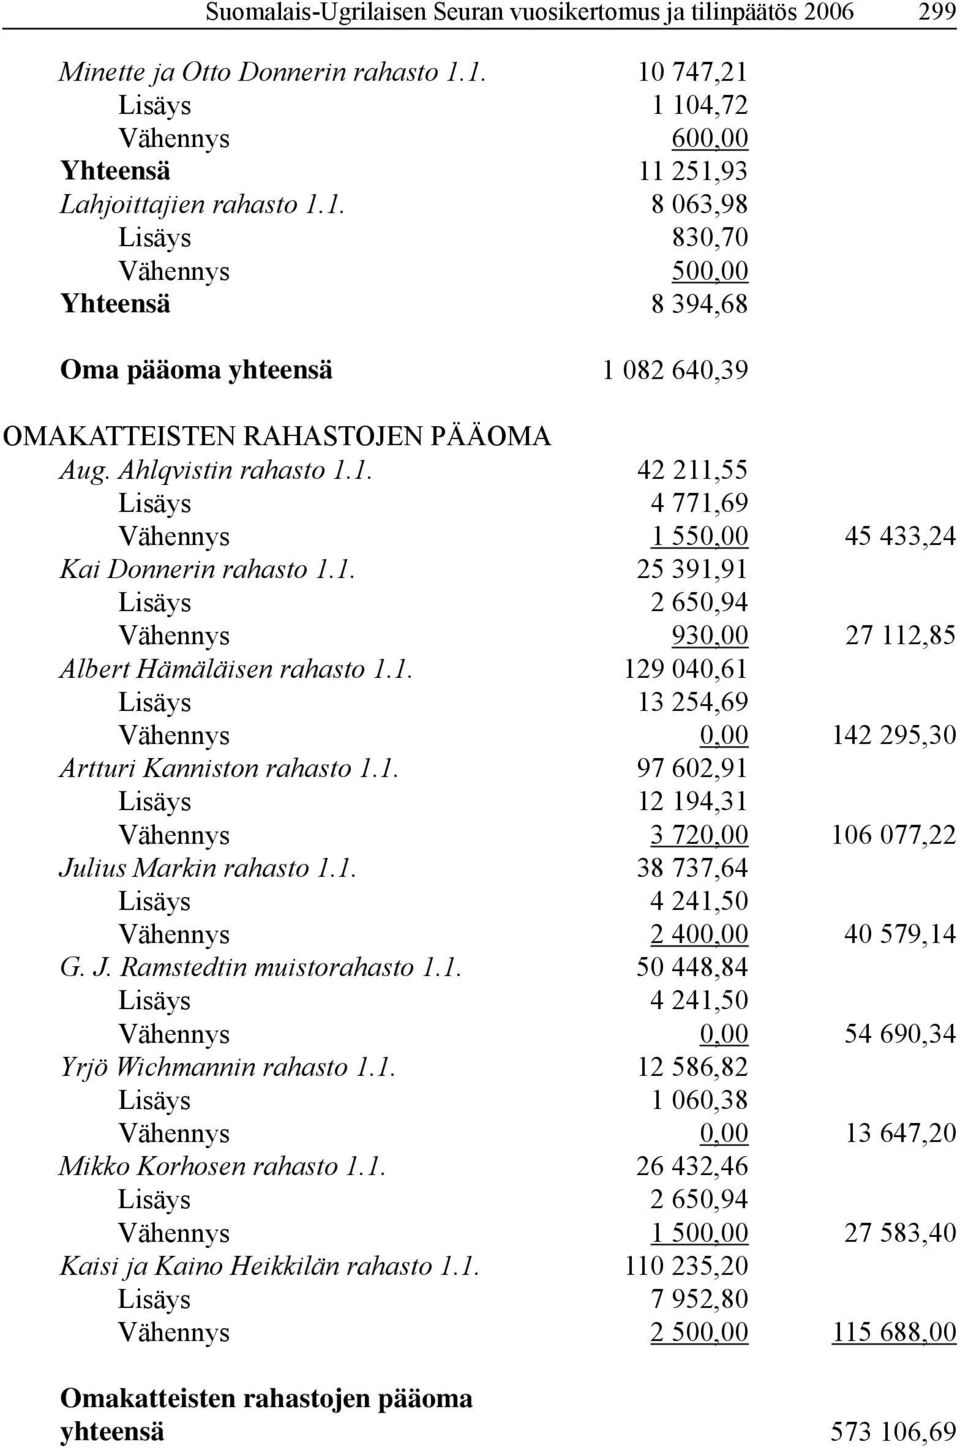 Ahlqvistin rahasto 1.1. 42 211,55 Lisäys 4 771,69 Vähennys 1 550,00 45 433,24 Kai Donnerin rahasto 1.1. 25 391,91 Lisäys 2 650,94 Vähennys 930,00 27 112,85 Albert Hämäläisen rahasto 1.1. 129 040,61 Lisäys 13 254,69 Vähennys 0,00 142 295,30 Artturi Kanniston rahasto 1.